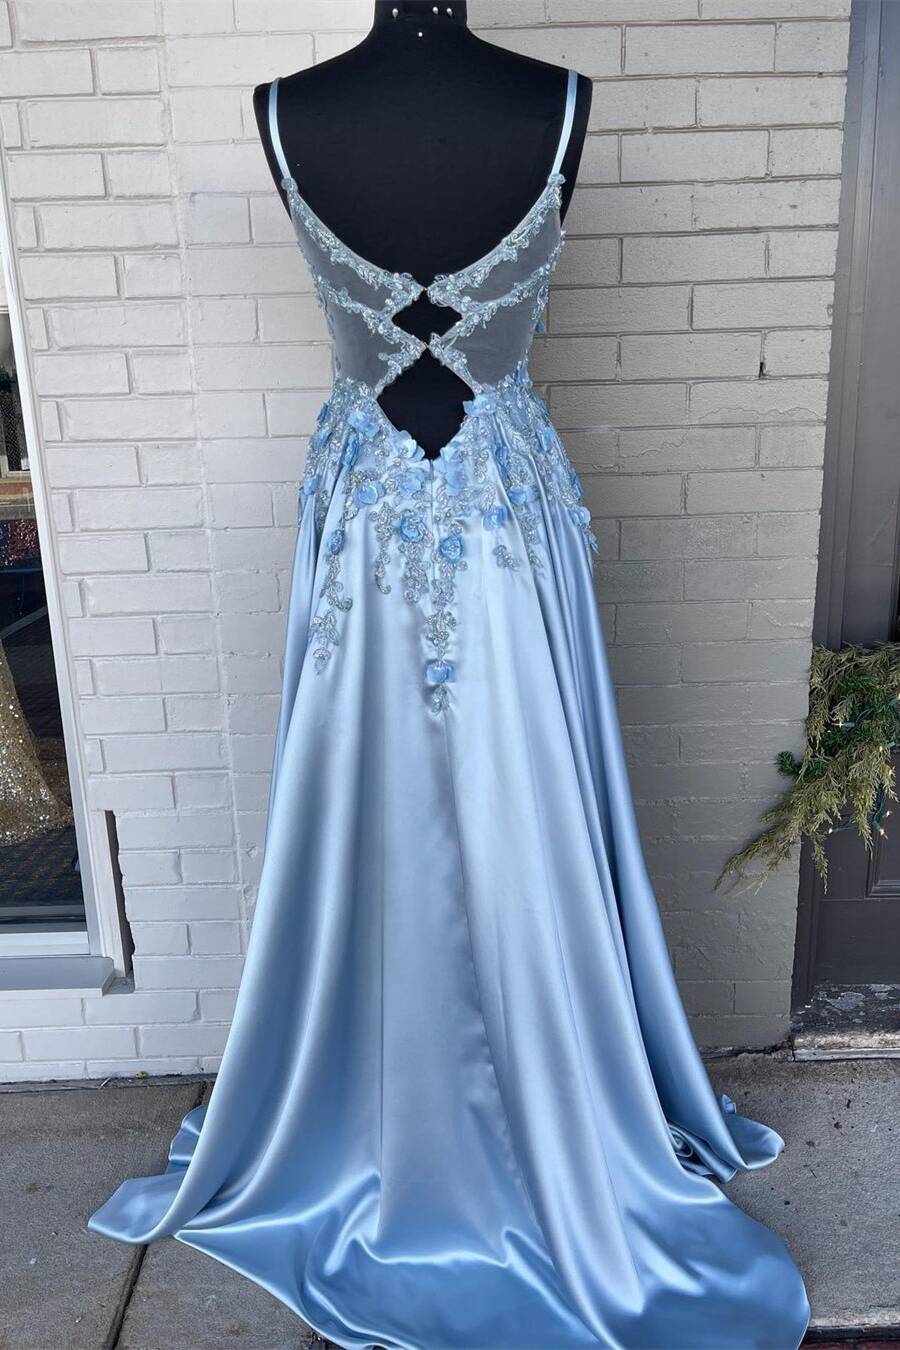 Dress Design, Light Blue A-line 3D Flowers Satin Long Prom Dress